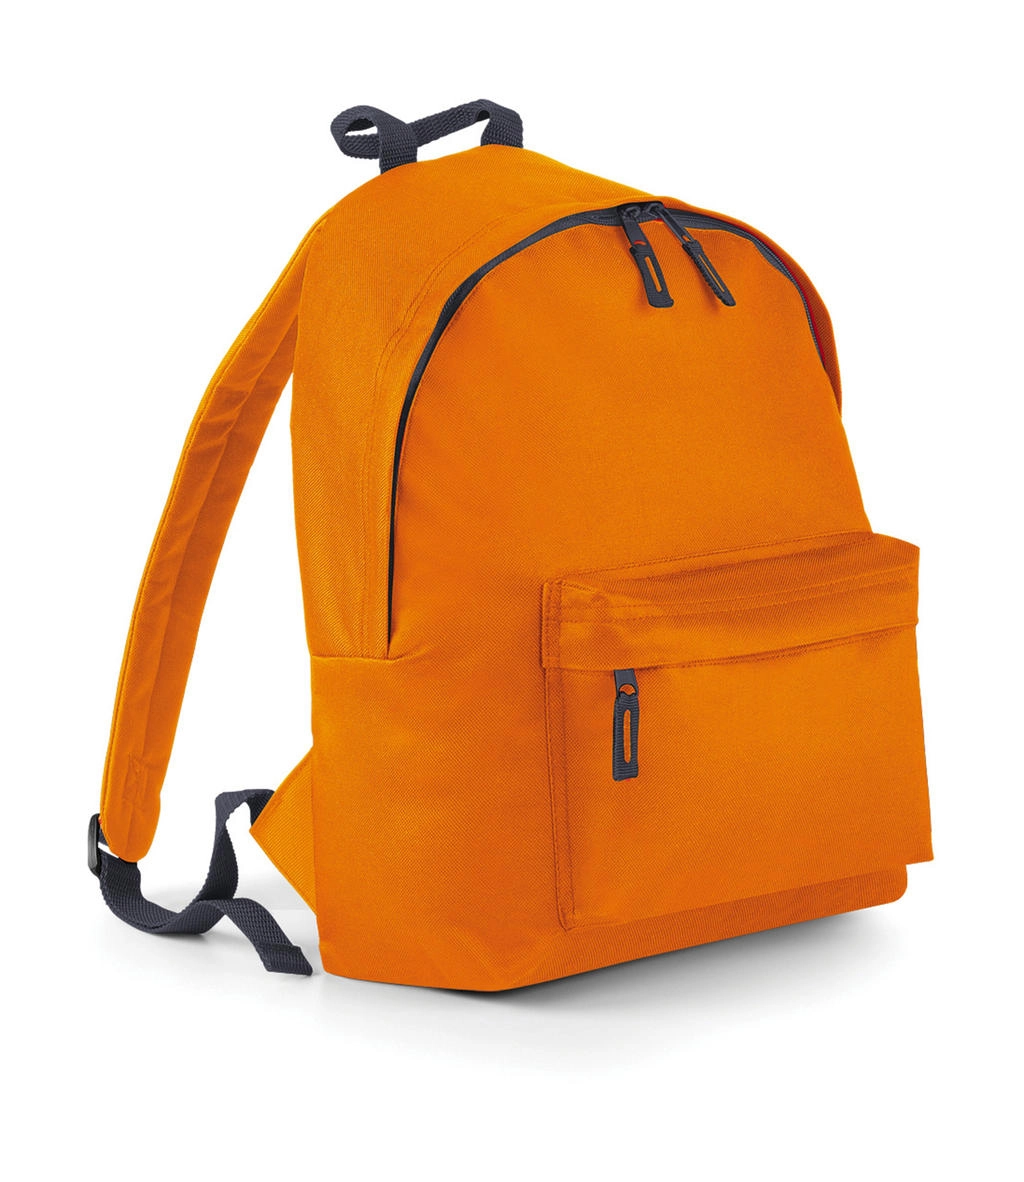 Junior Fashion Backpack zum Besticken und Bedrucken in der Farbe Orange/Graphite Grey mit Ihren Logo, Schriftzug oder Motiv.